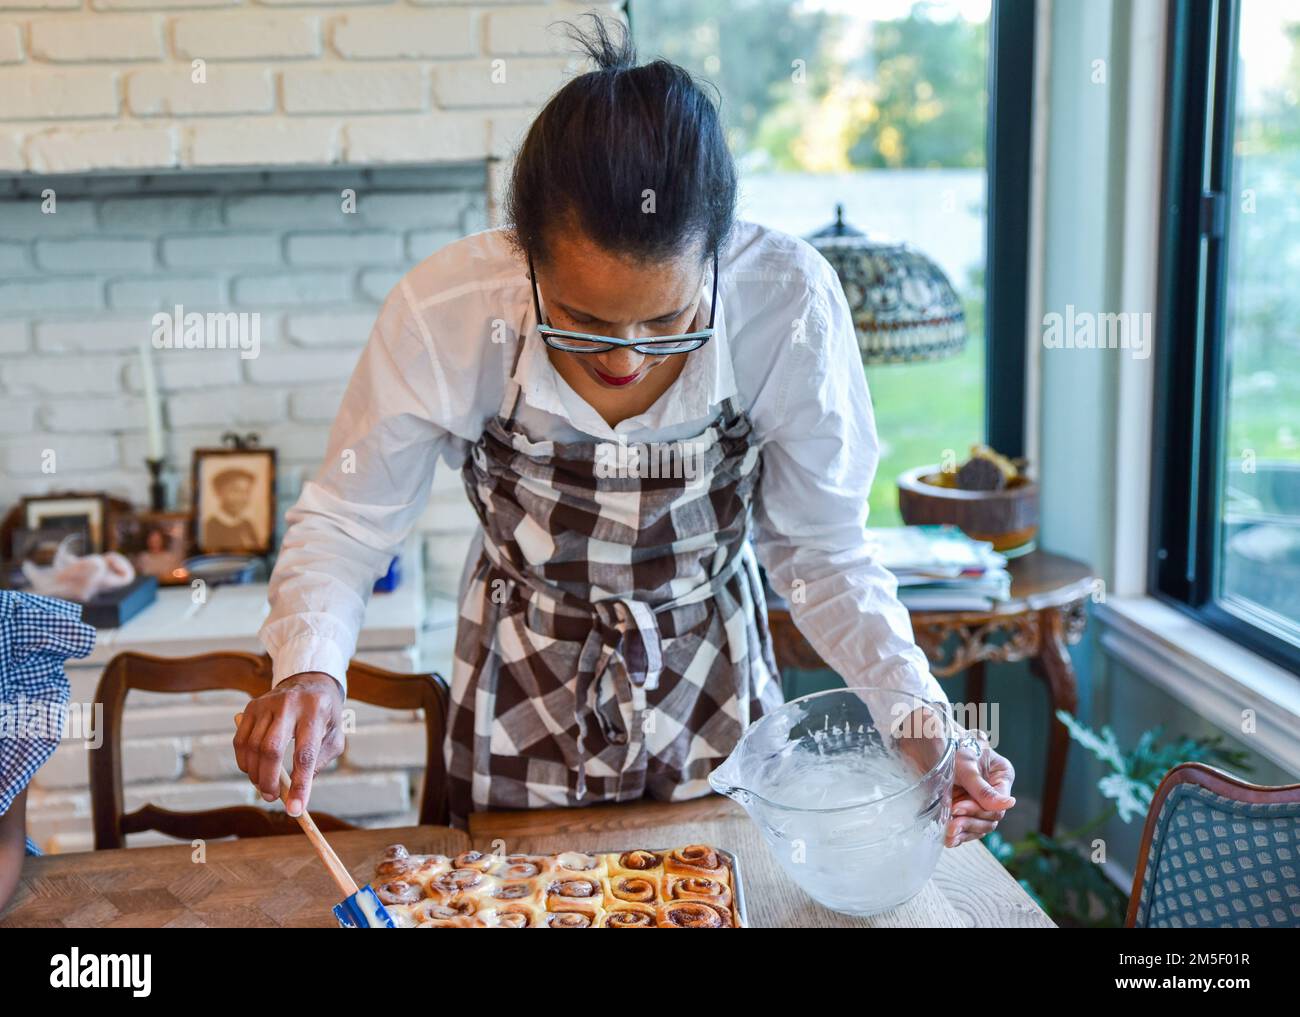 une femme qui pose une grande feuille de petits pains à la cannelle fraîchement cuits place soigneusement dans les rangées en attendant d'être émaillée de glaçage blanc Banque D'Images